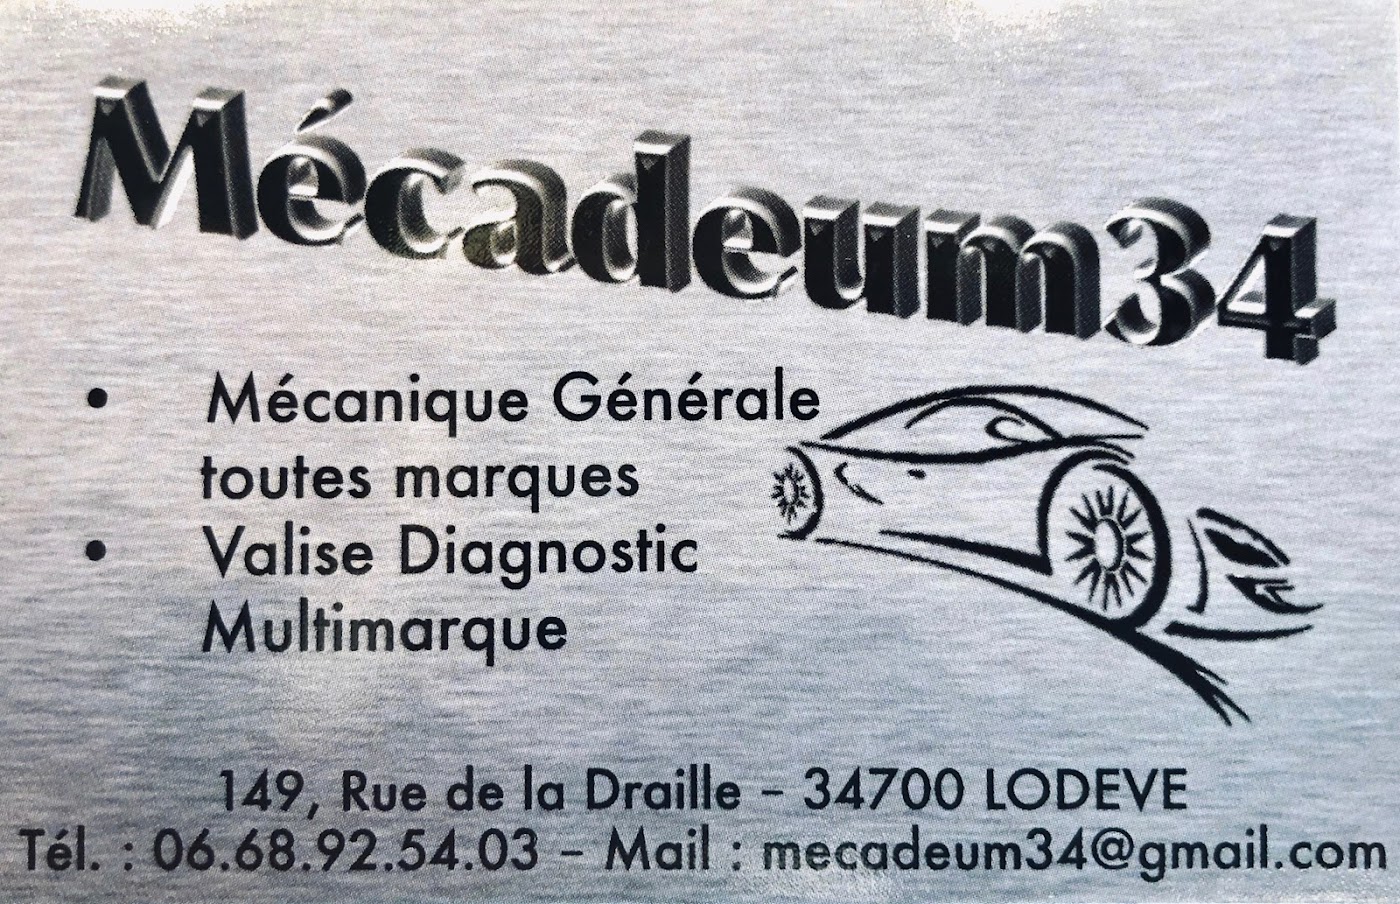 Mecadeum34